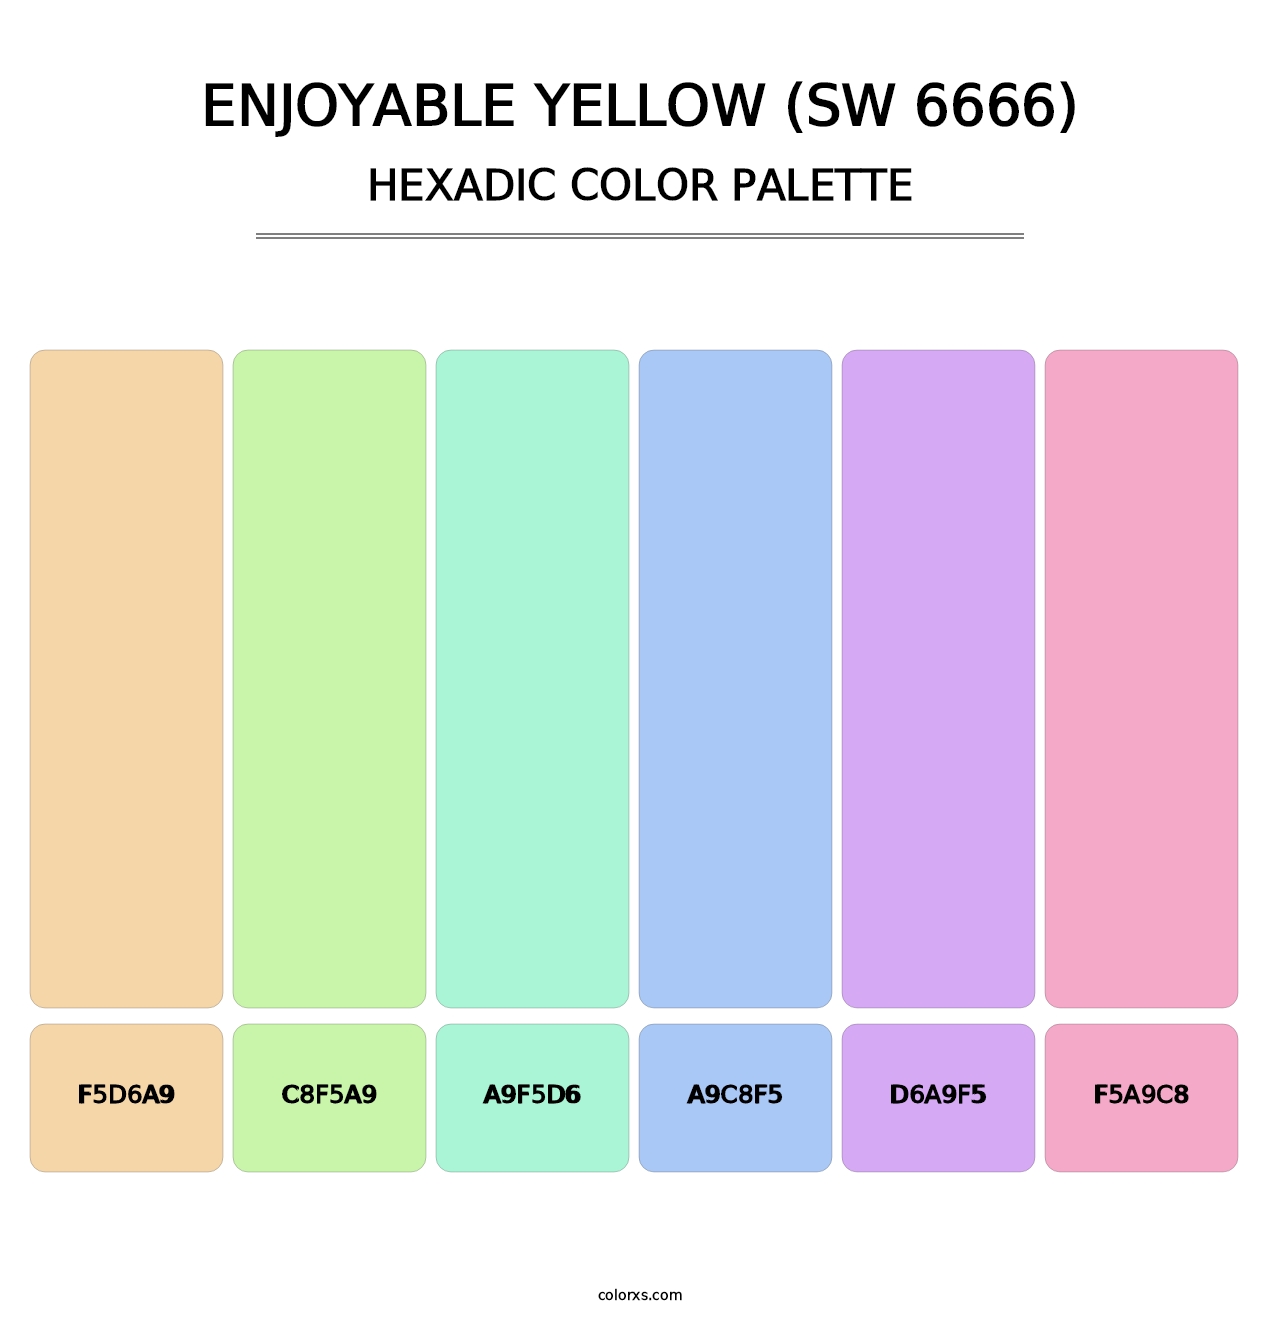 Enjoyable Yellow (SW 6666) - Hexadic Color Palette